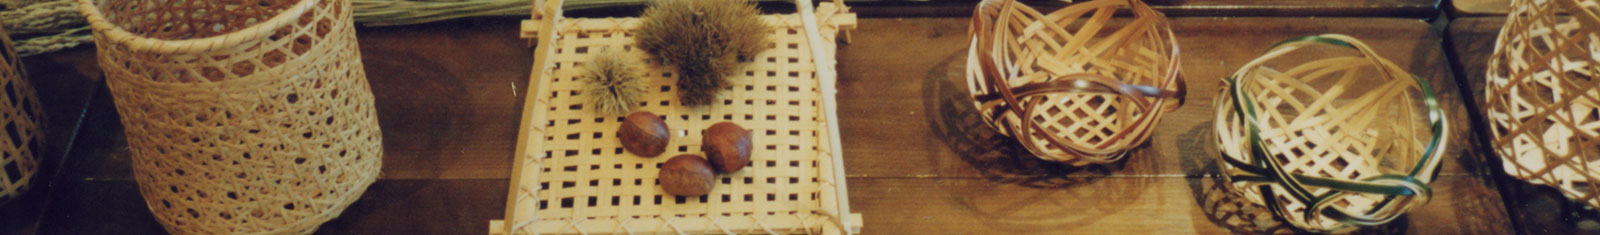 「竹工芸教室」イメージ